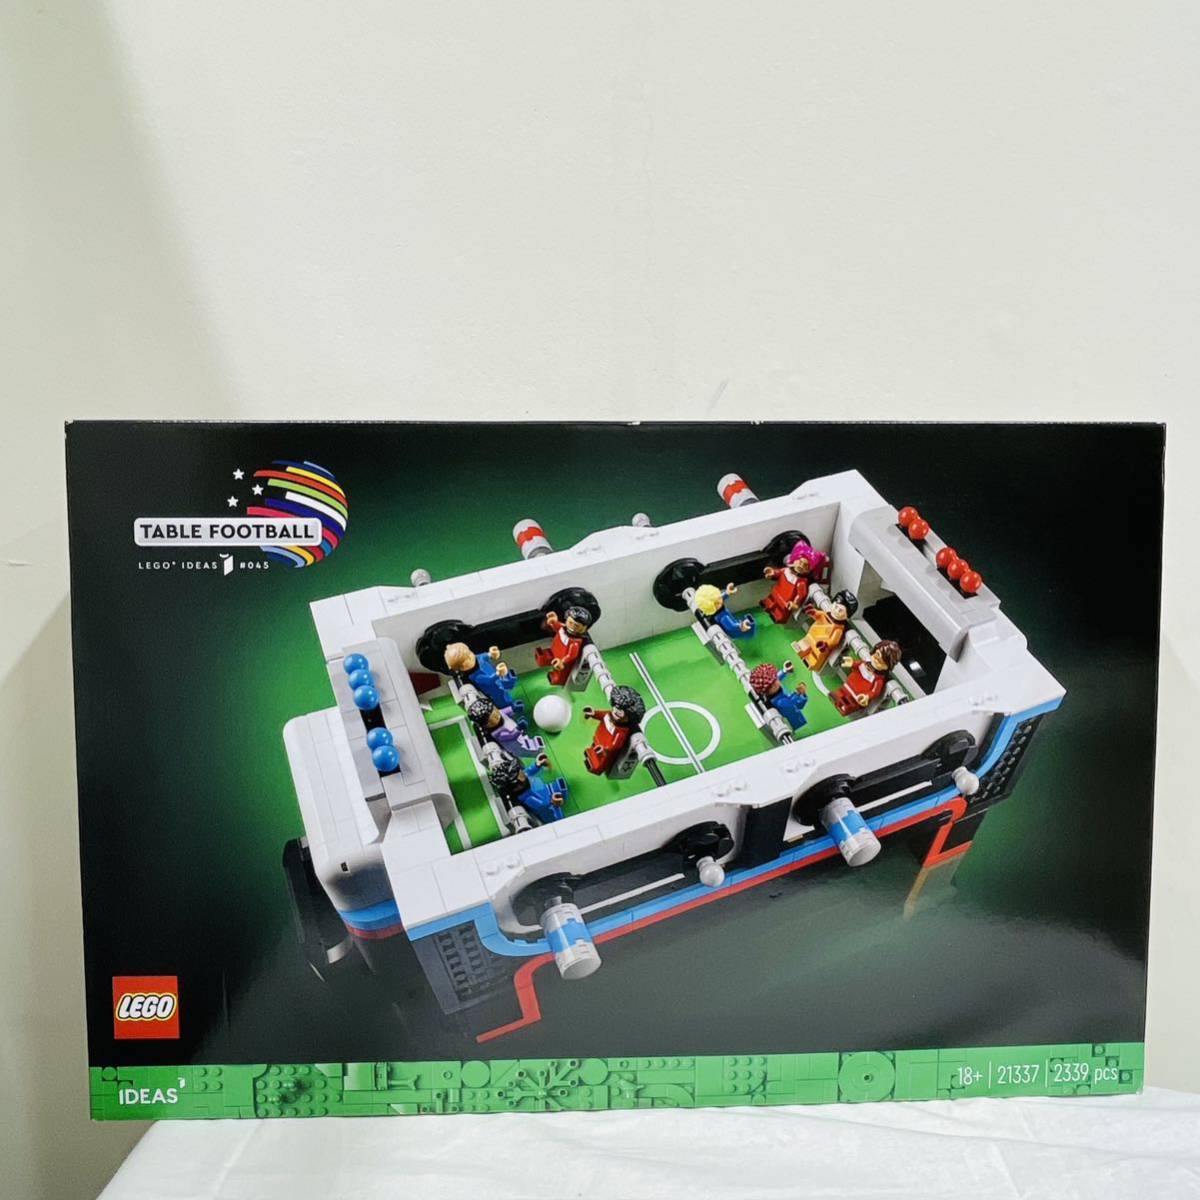 Yahoo!オークション -「soccer」(その他) (LEGO)の落札相場・落札価格